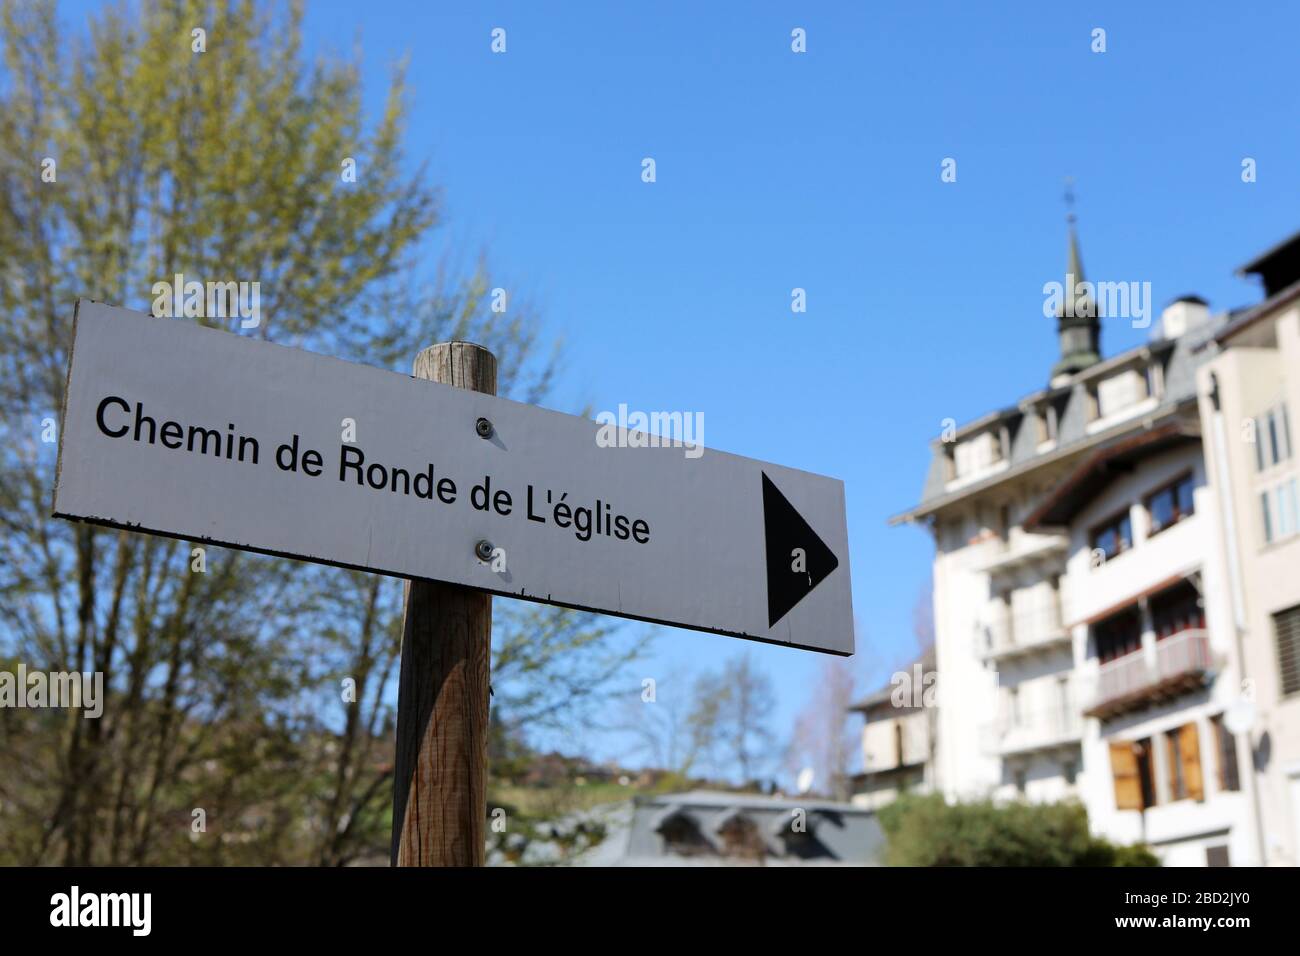 Chemin de Ronde de l'Eglise. Panneau. Saint-Gervais-les-Bains. Haute-Savoie. France. Stock Photo